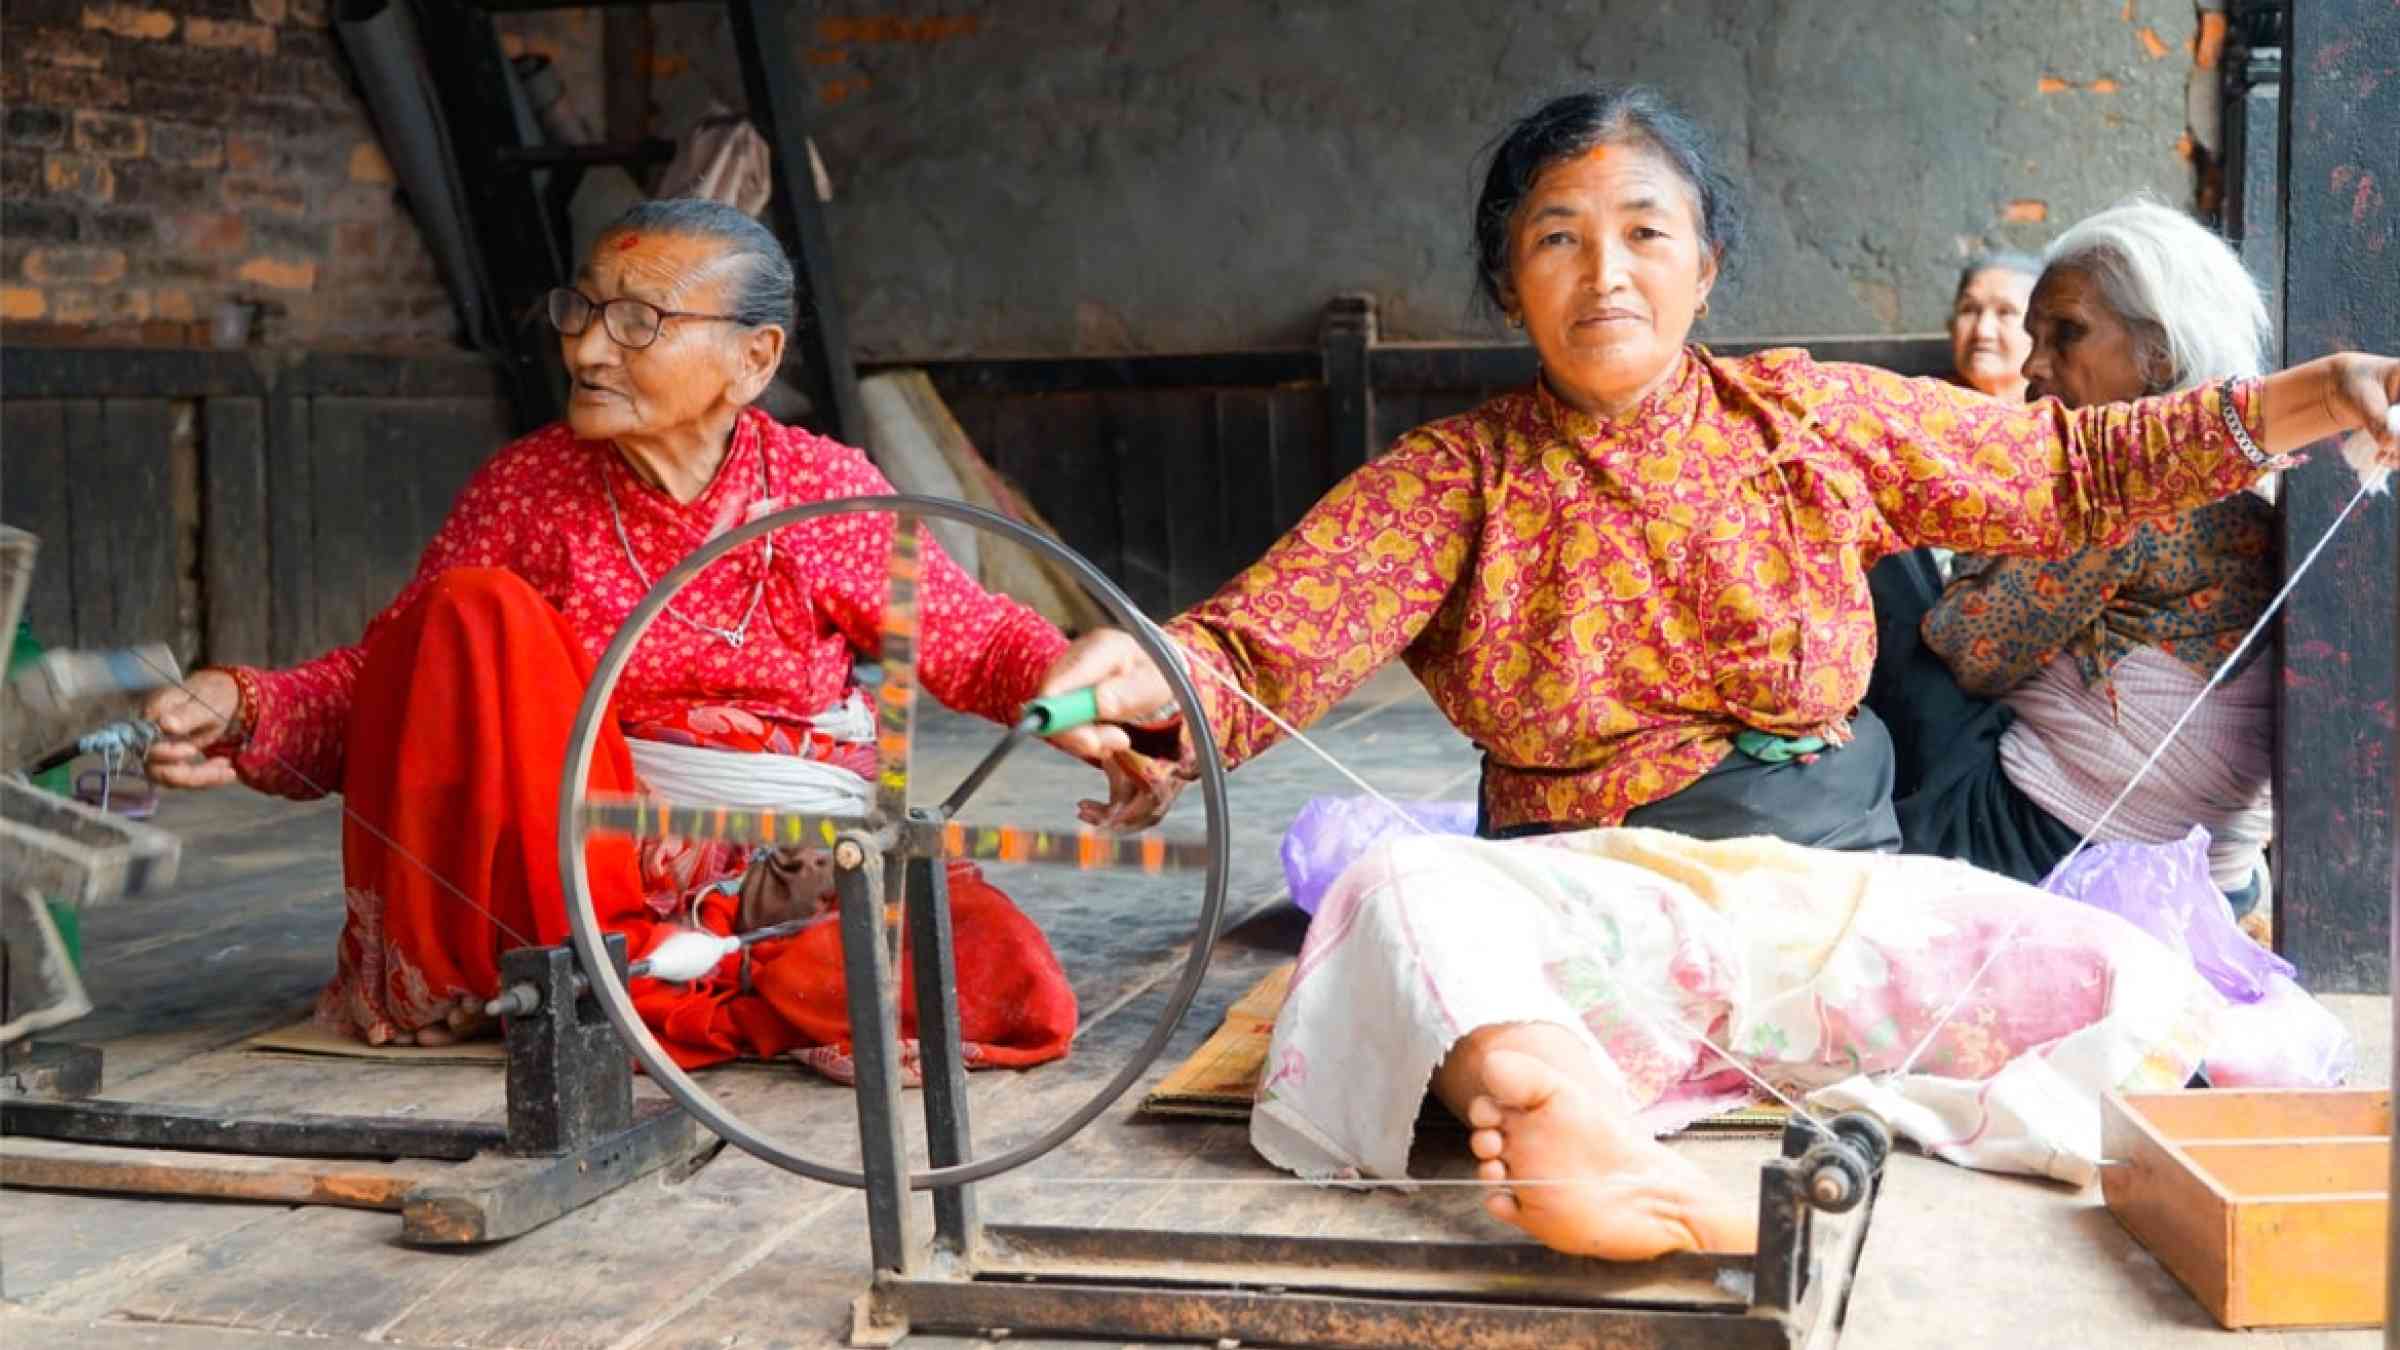 Women are spinning wool in a workshop in Bahaktapur, Nepal